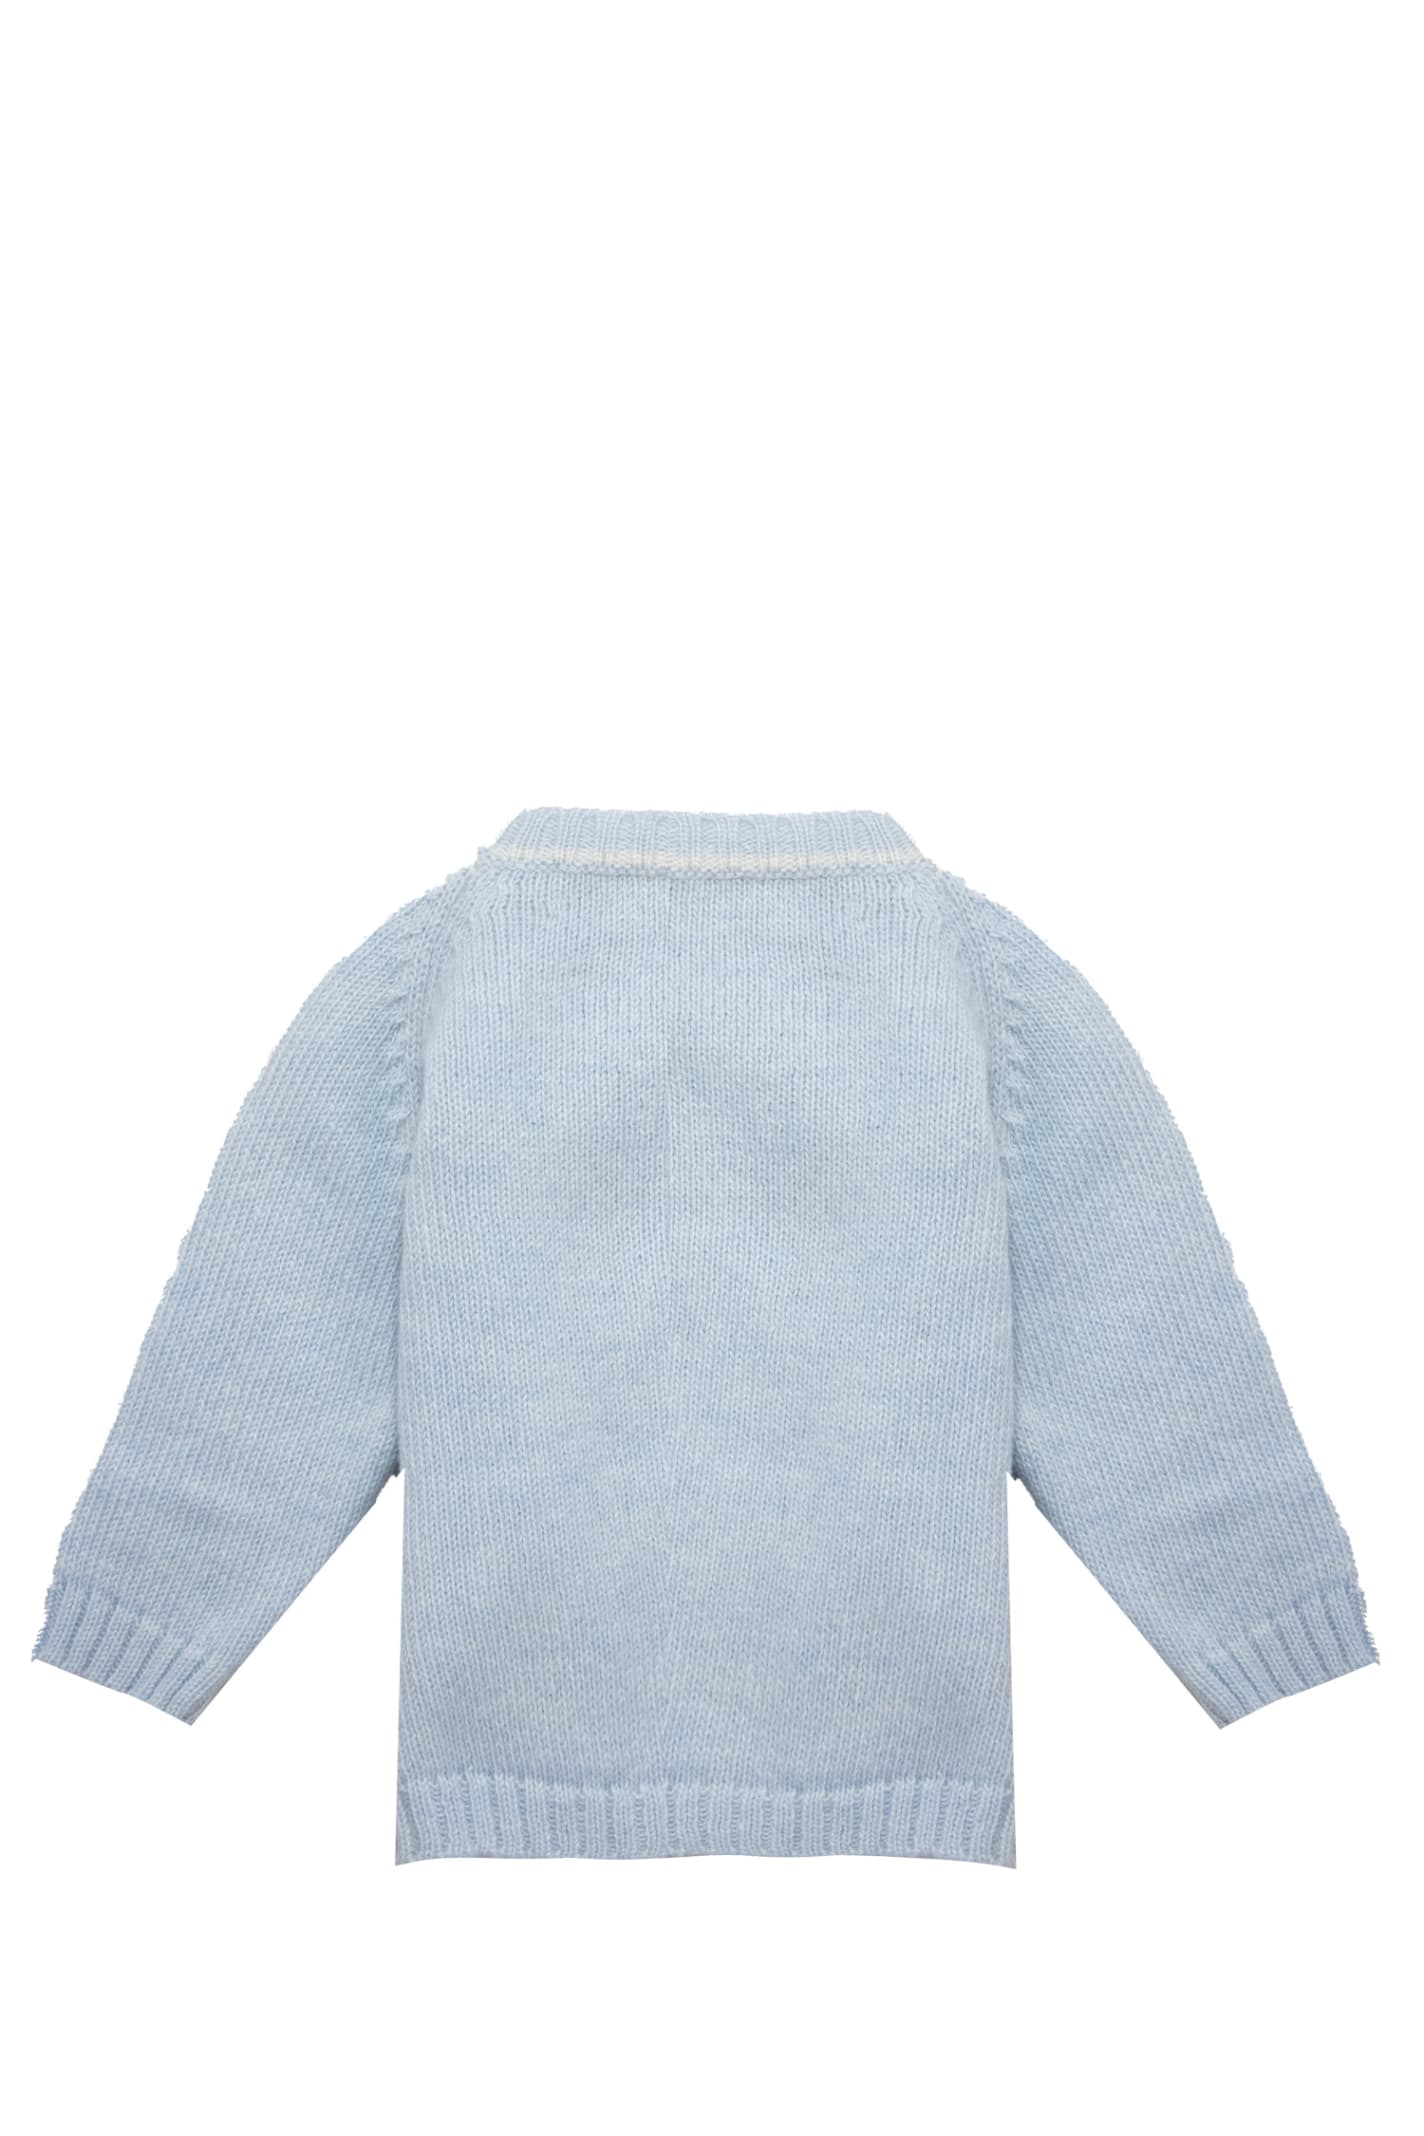 Shop La Stupenderia Wool Sweater In Light Blue